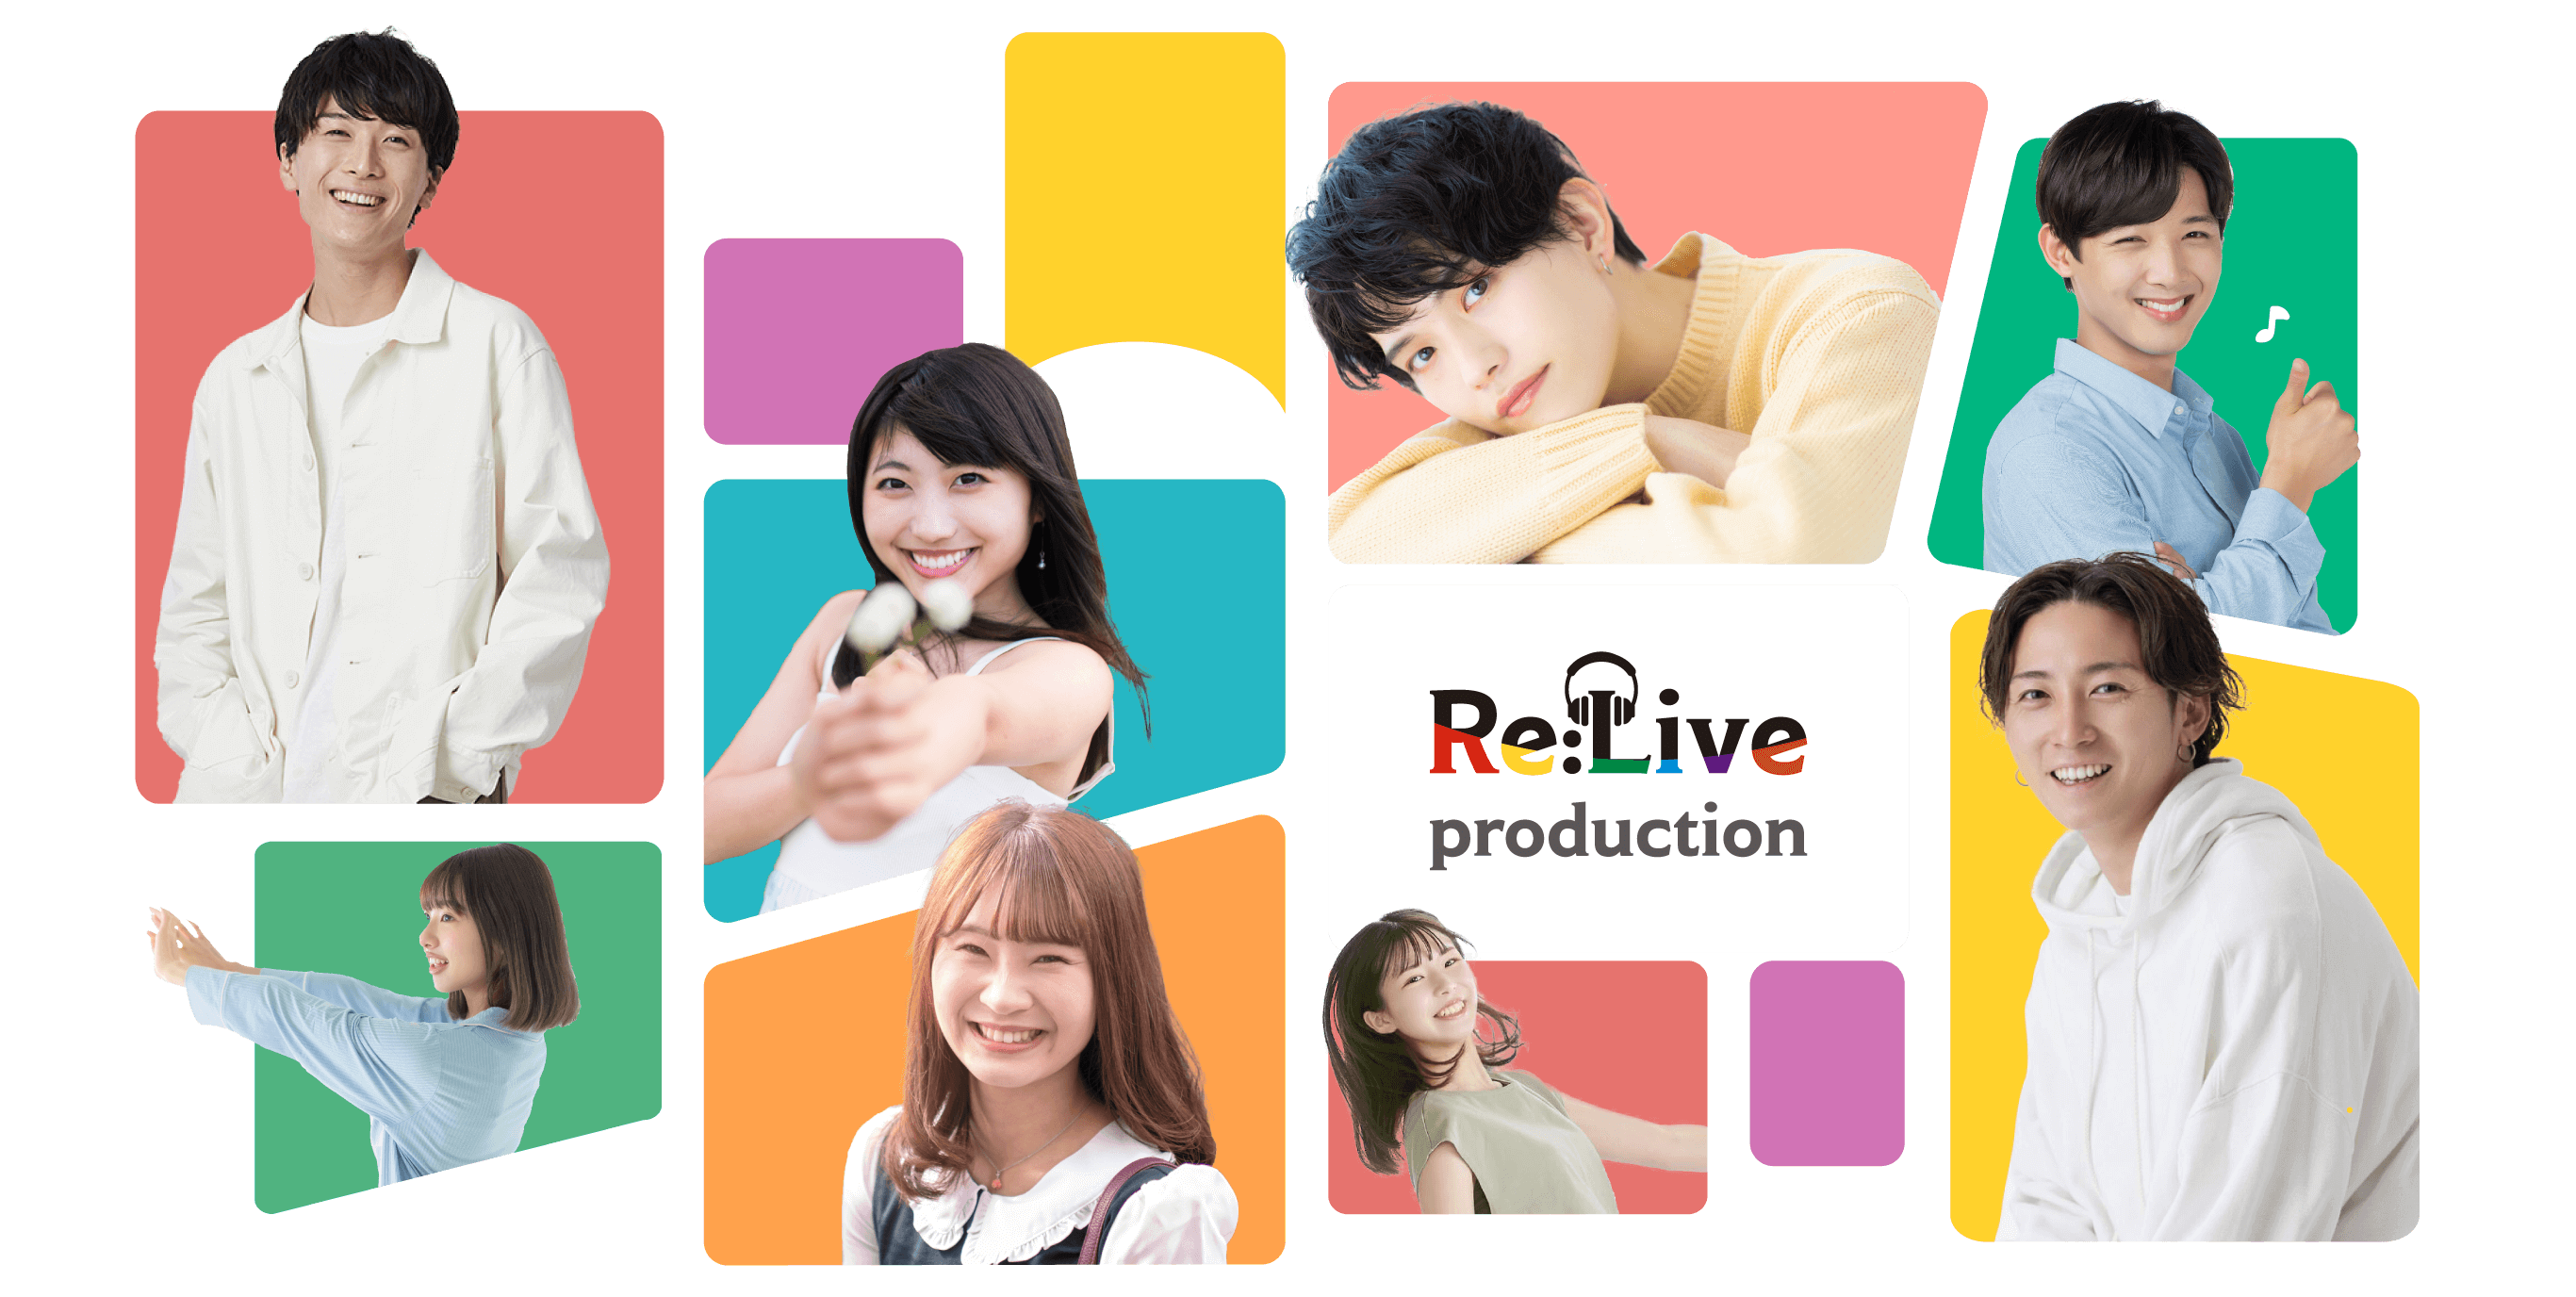 Re:Live production